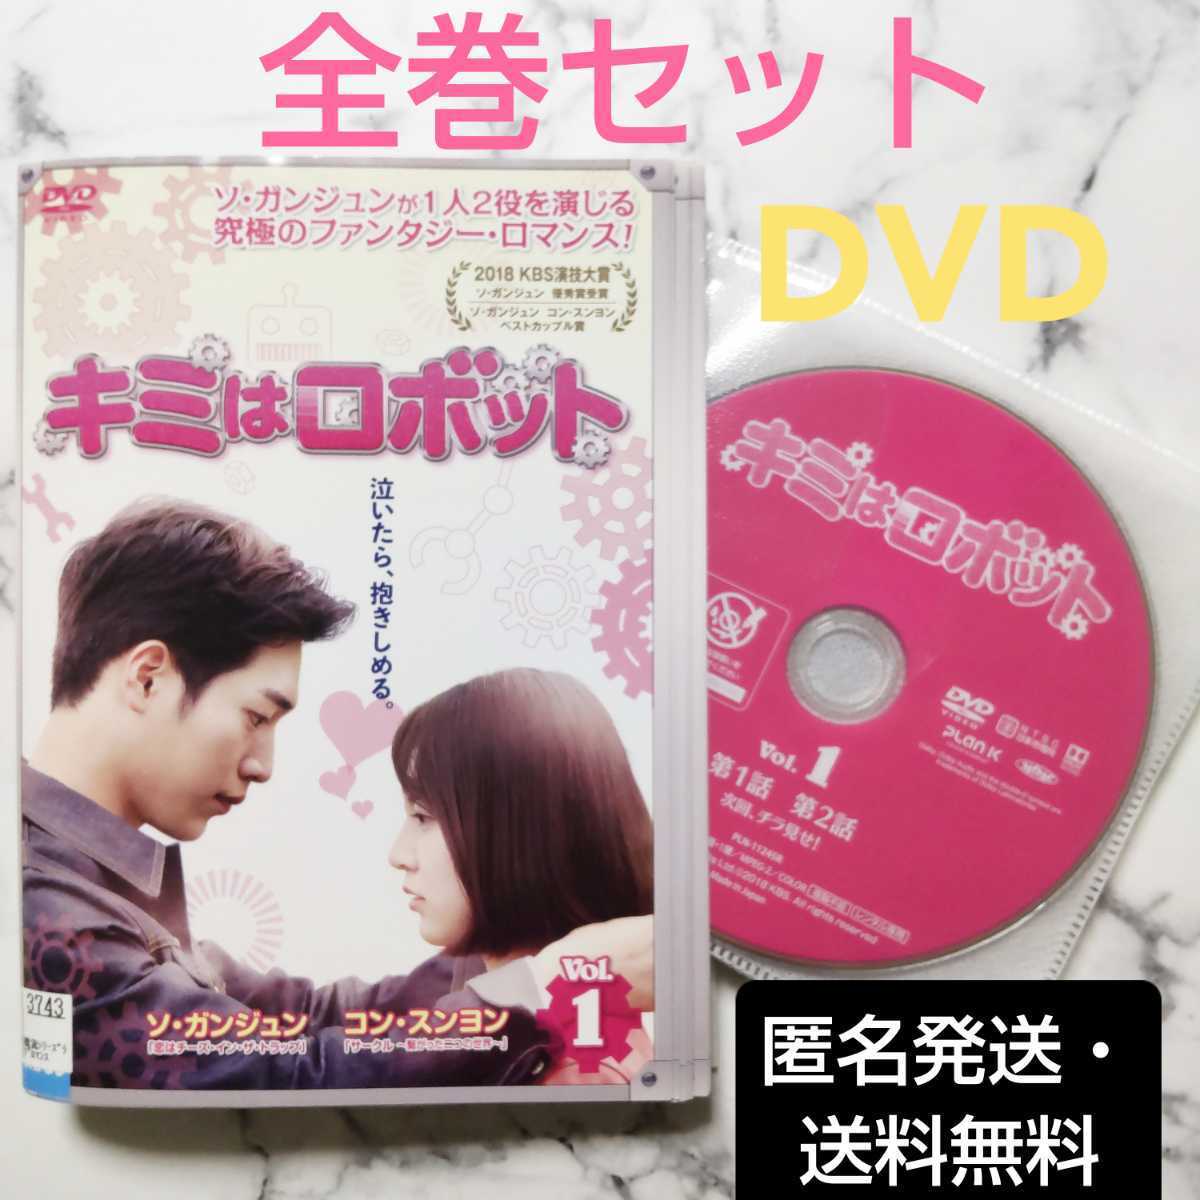 恋の一撃ハイキック 全31巻 レンタル版DVD 全巻セット 韓国ドラマ ユン 